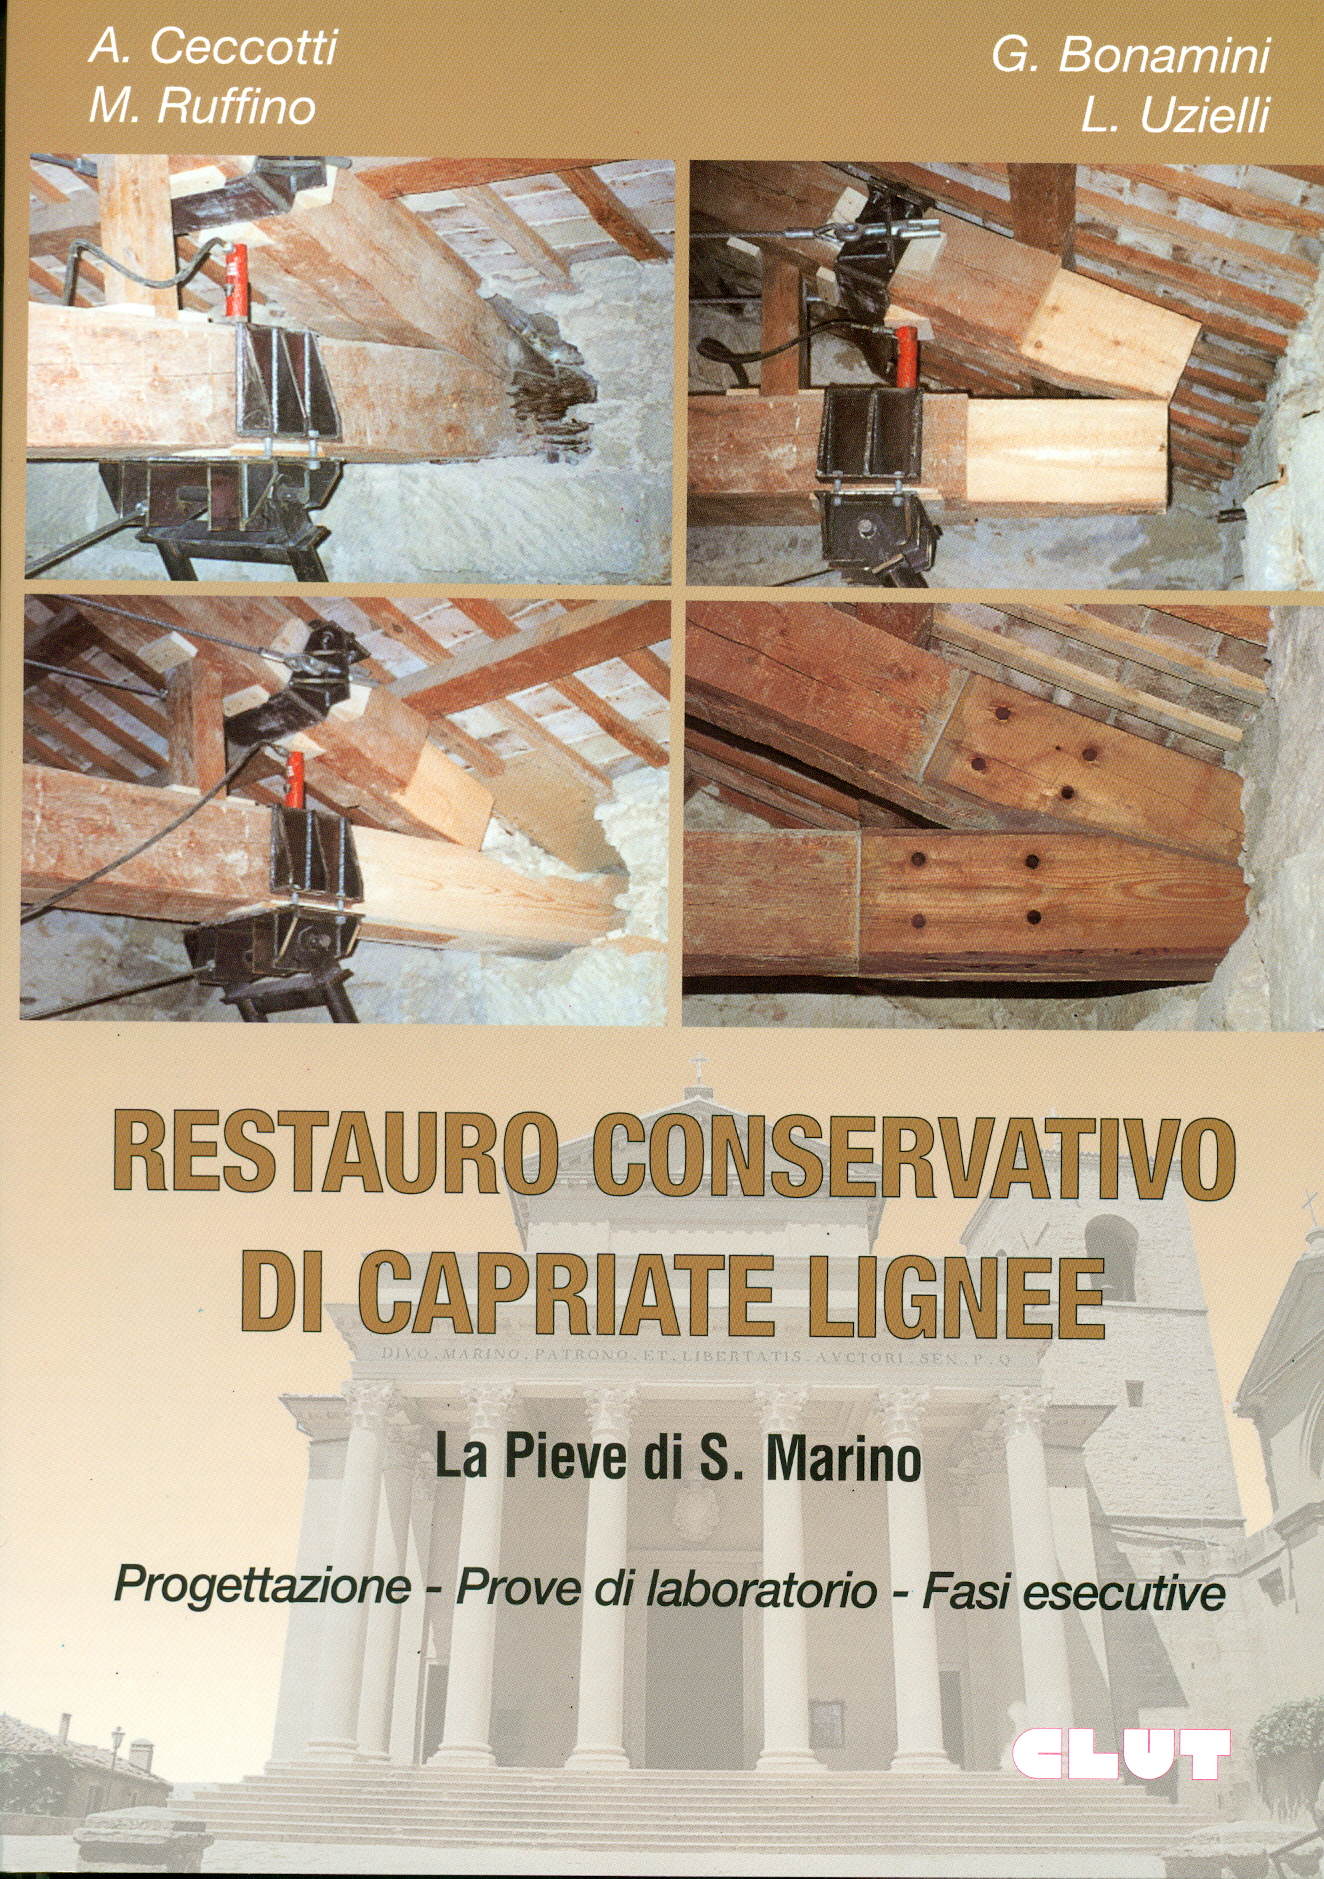 RESTAURO CONSERVATIVO DI CAPRIATE LIGNEE - La Pieve di S. Marino